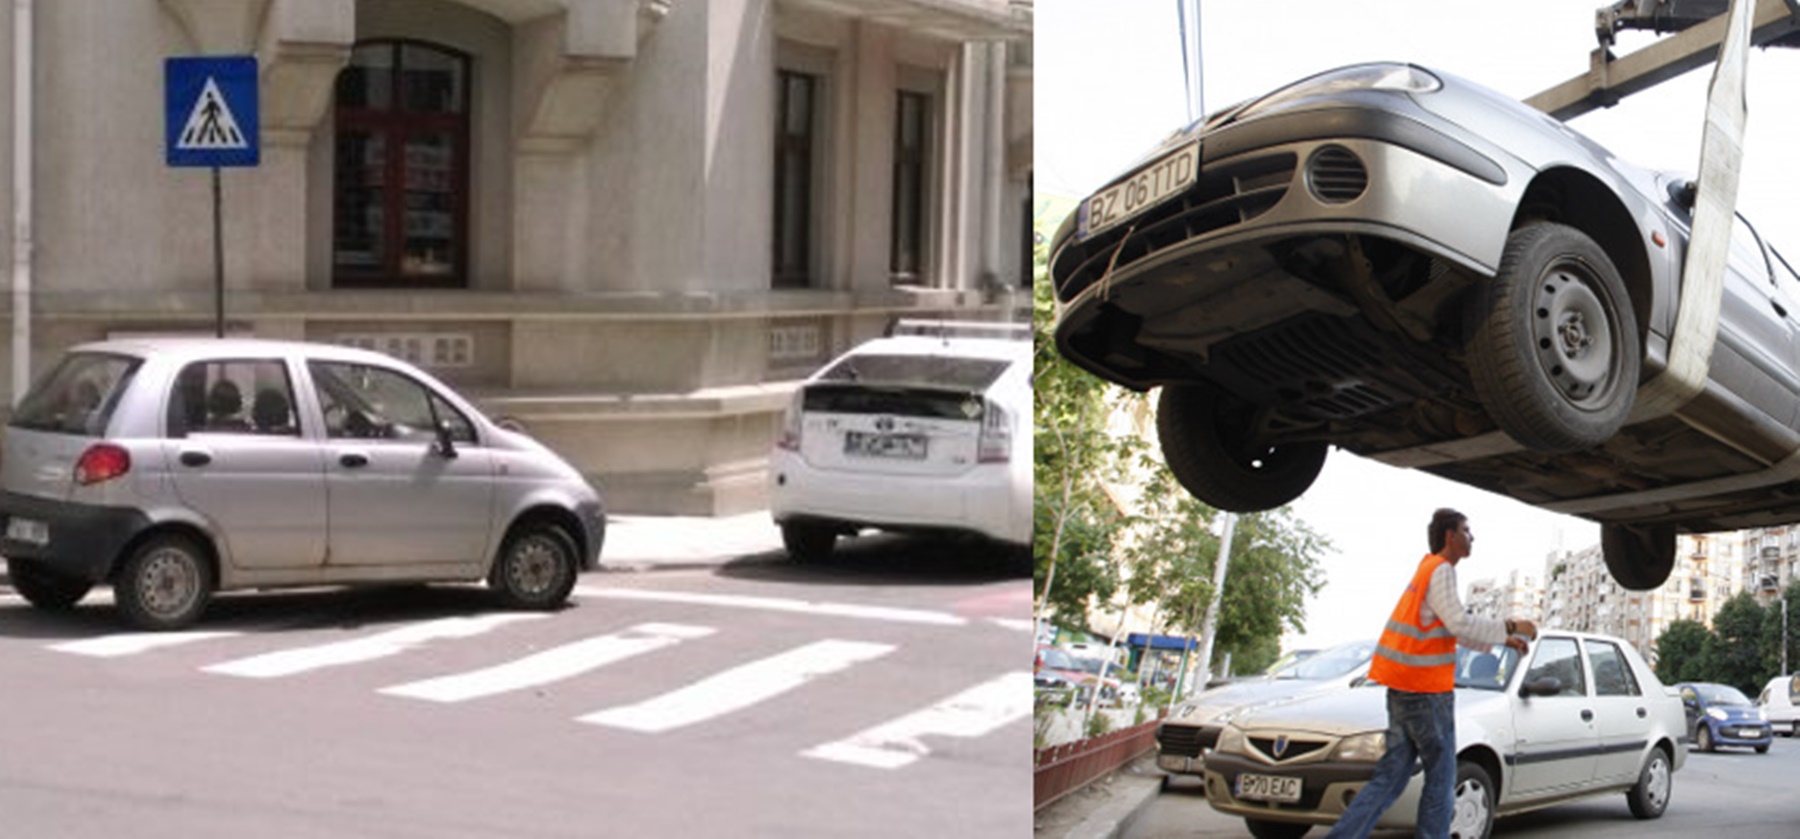 Proiect de lege - Tarife mai mici pentru ridicarea mașinilor parcate neregulamentar